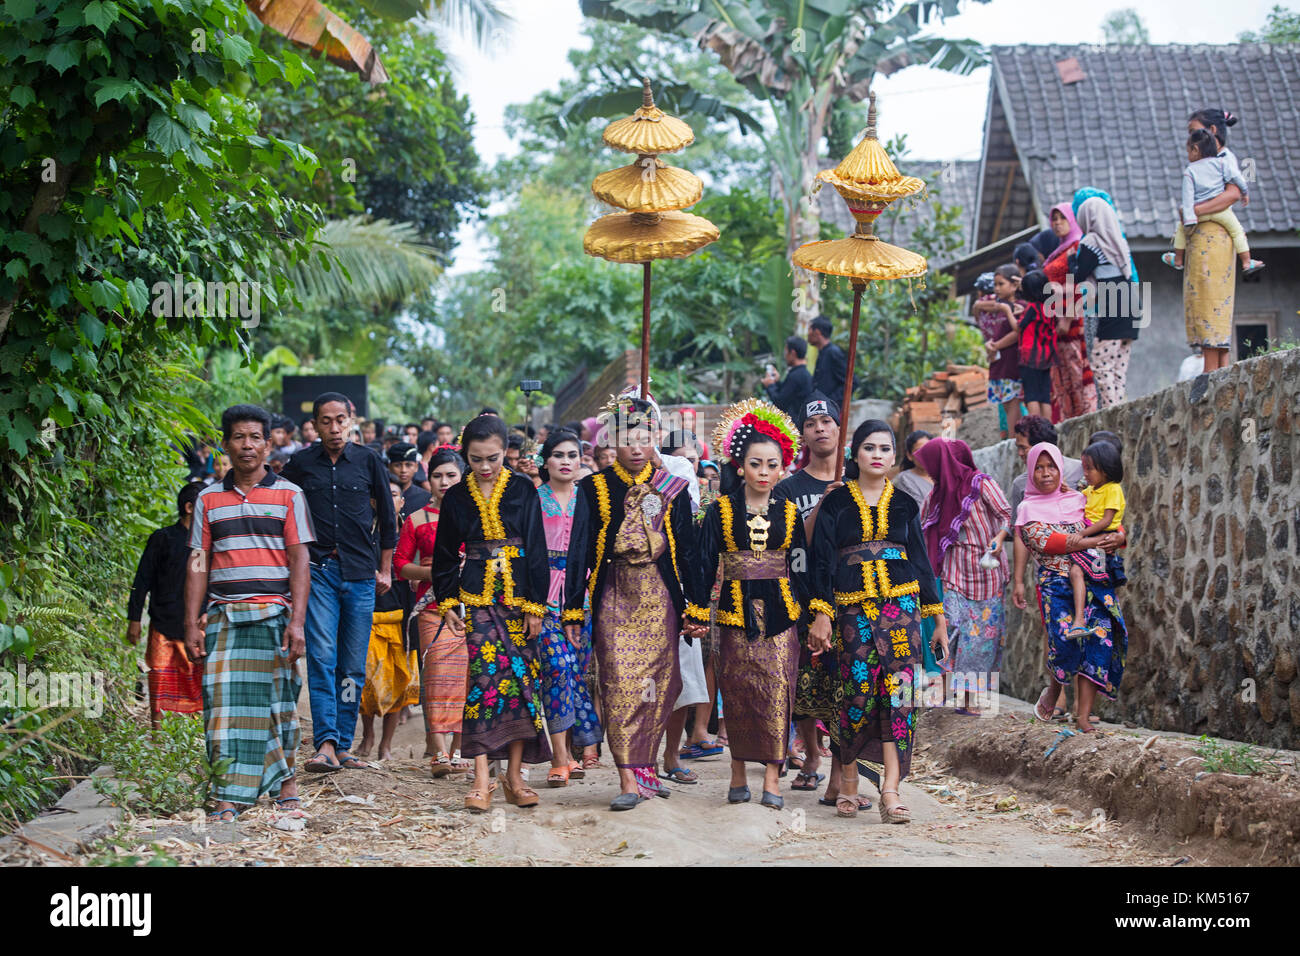 Cortège de mariage traditionnel indonésien dans le village tetebatu sur l'île de Lombok en Indonésie Banque D'Images